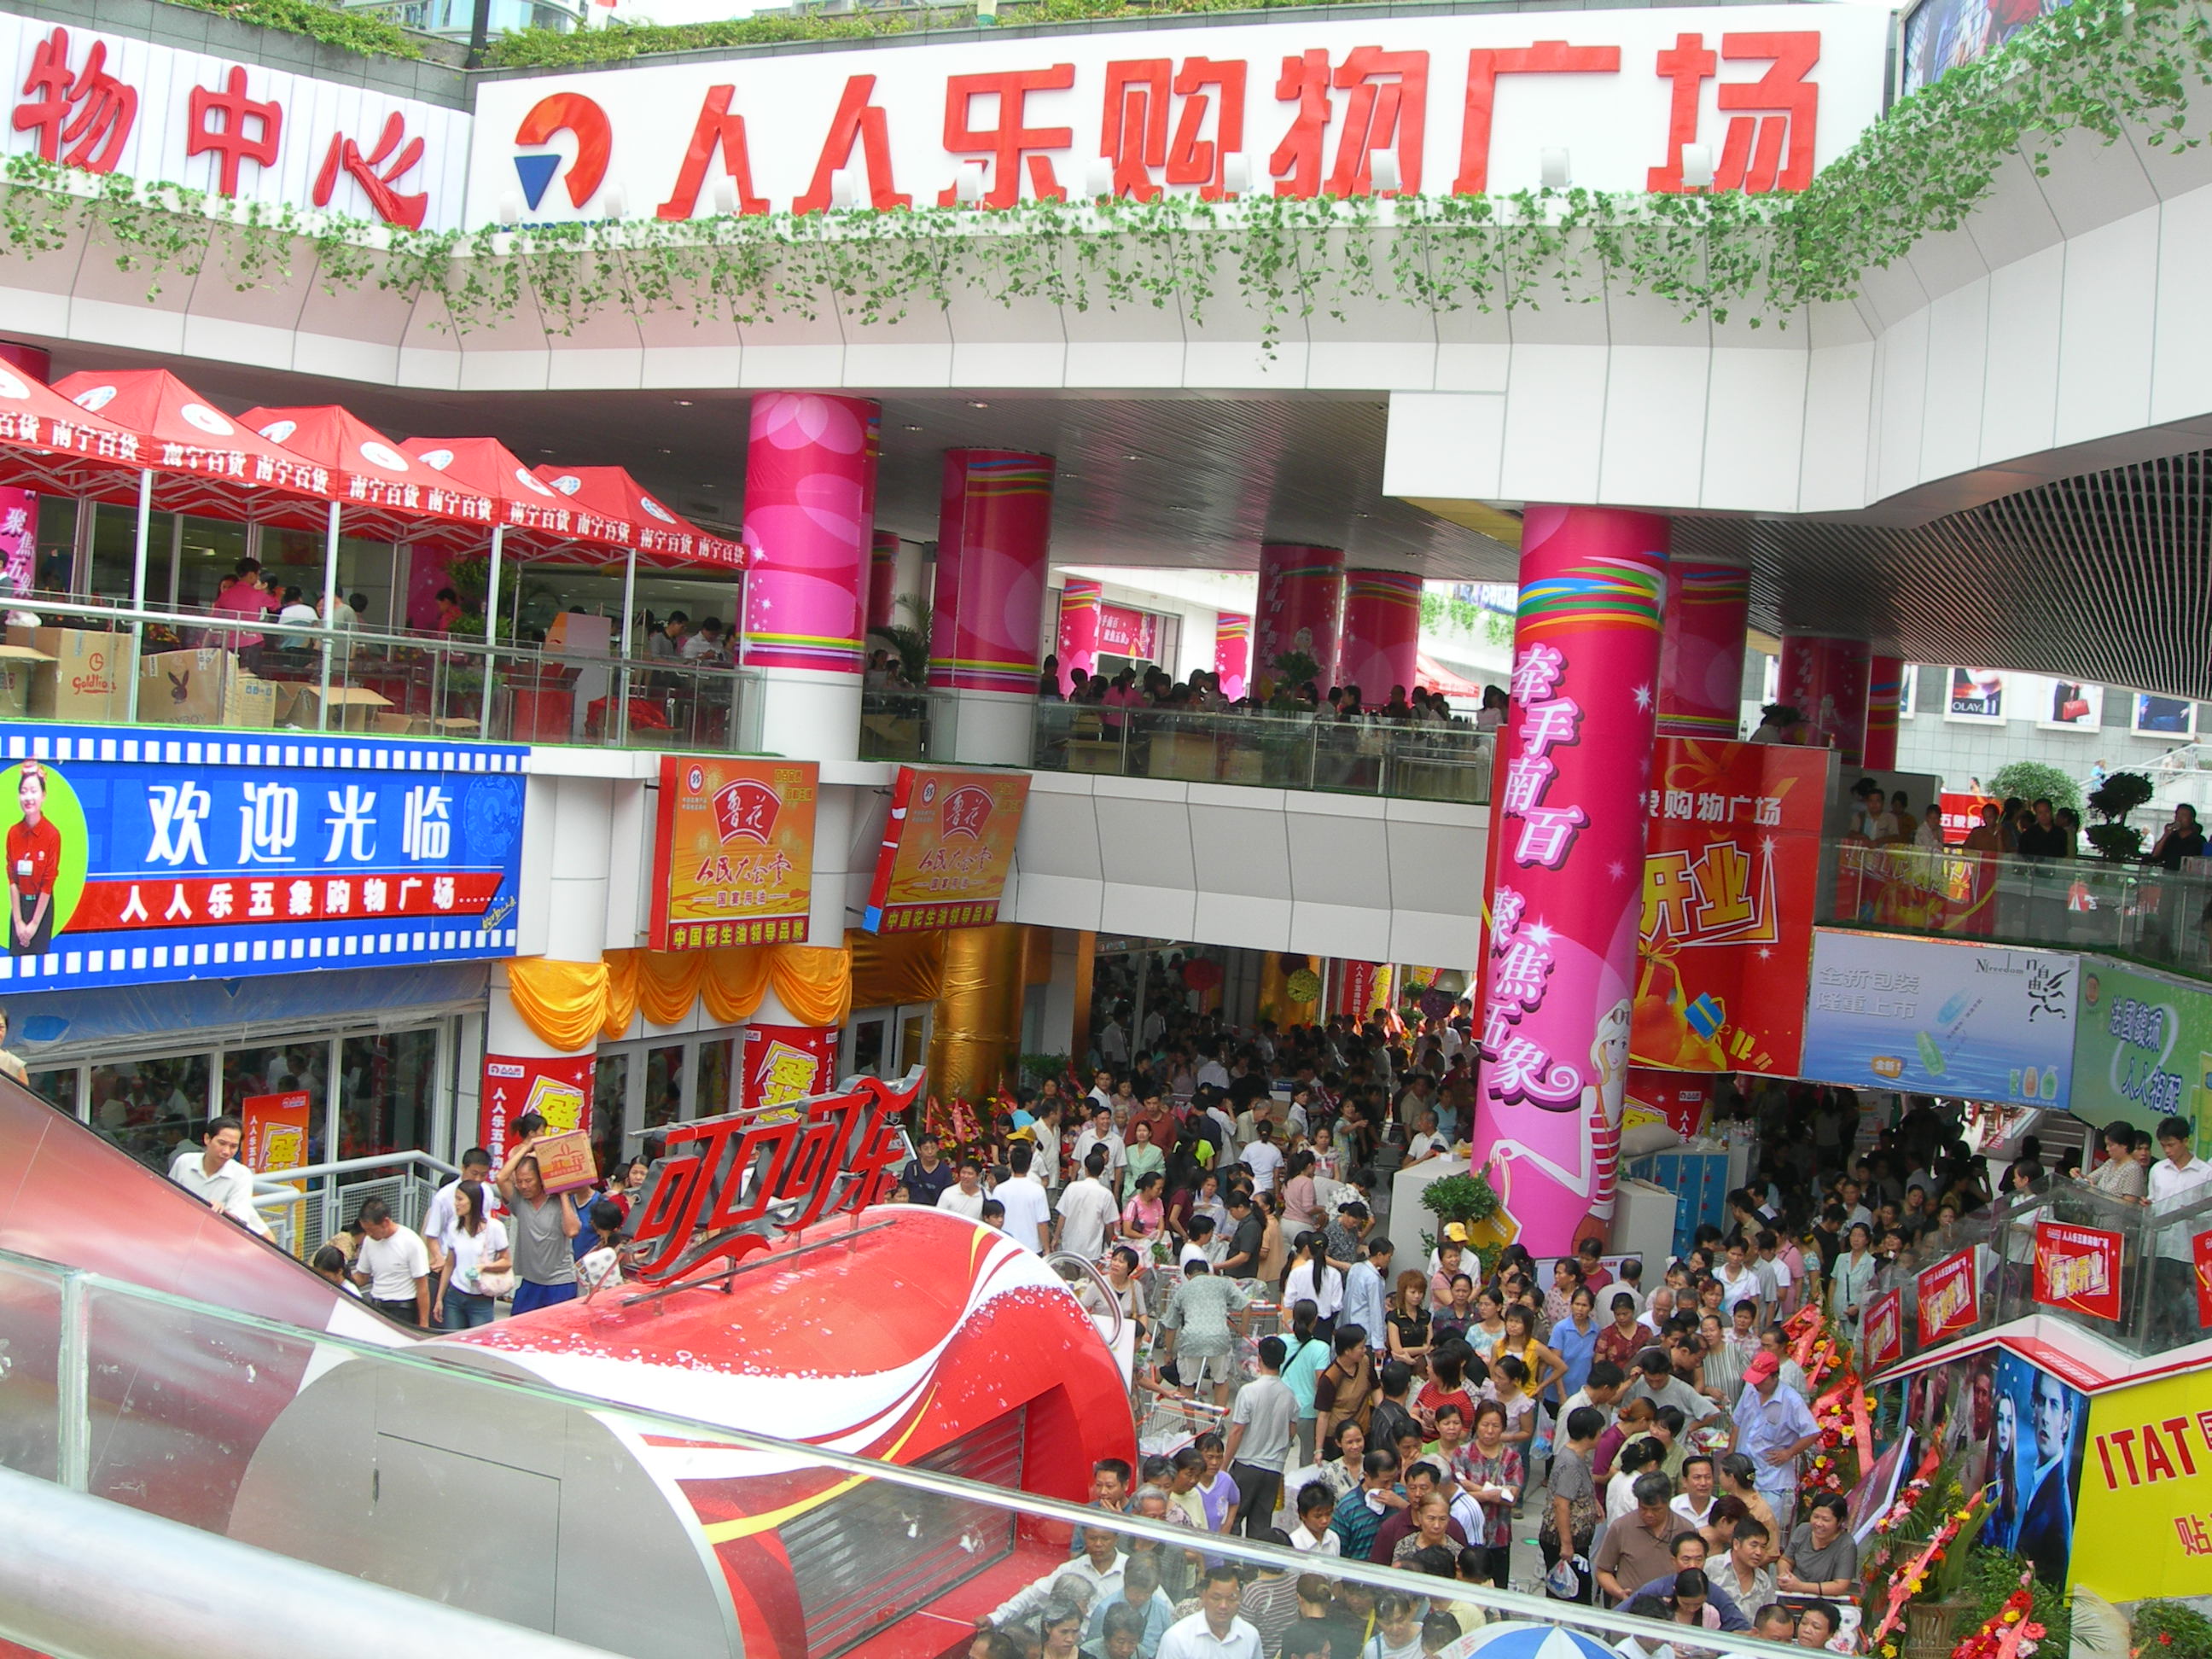 广西省南宁市人人乐商业有限公司五象购物广场